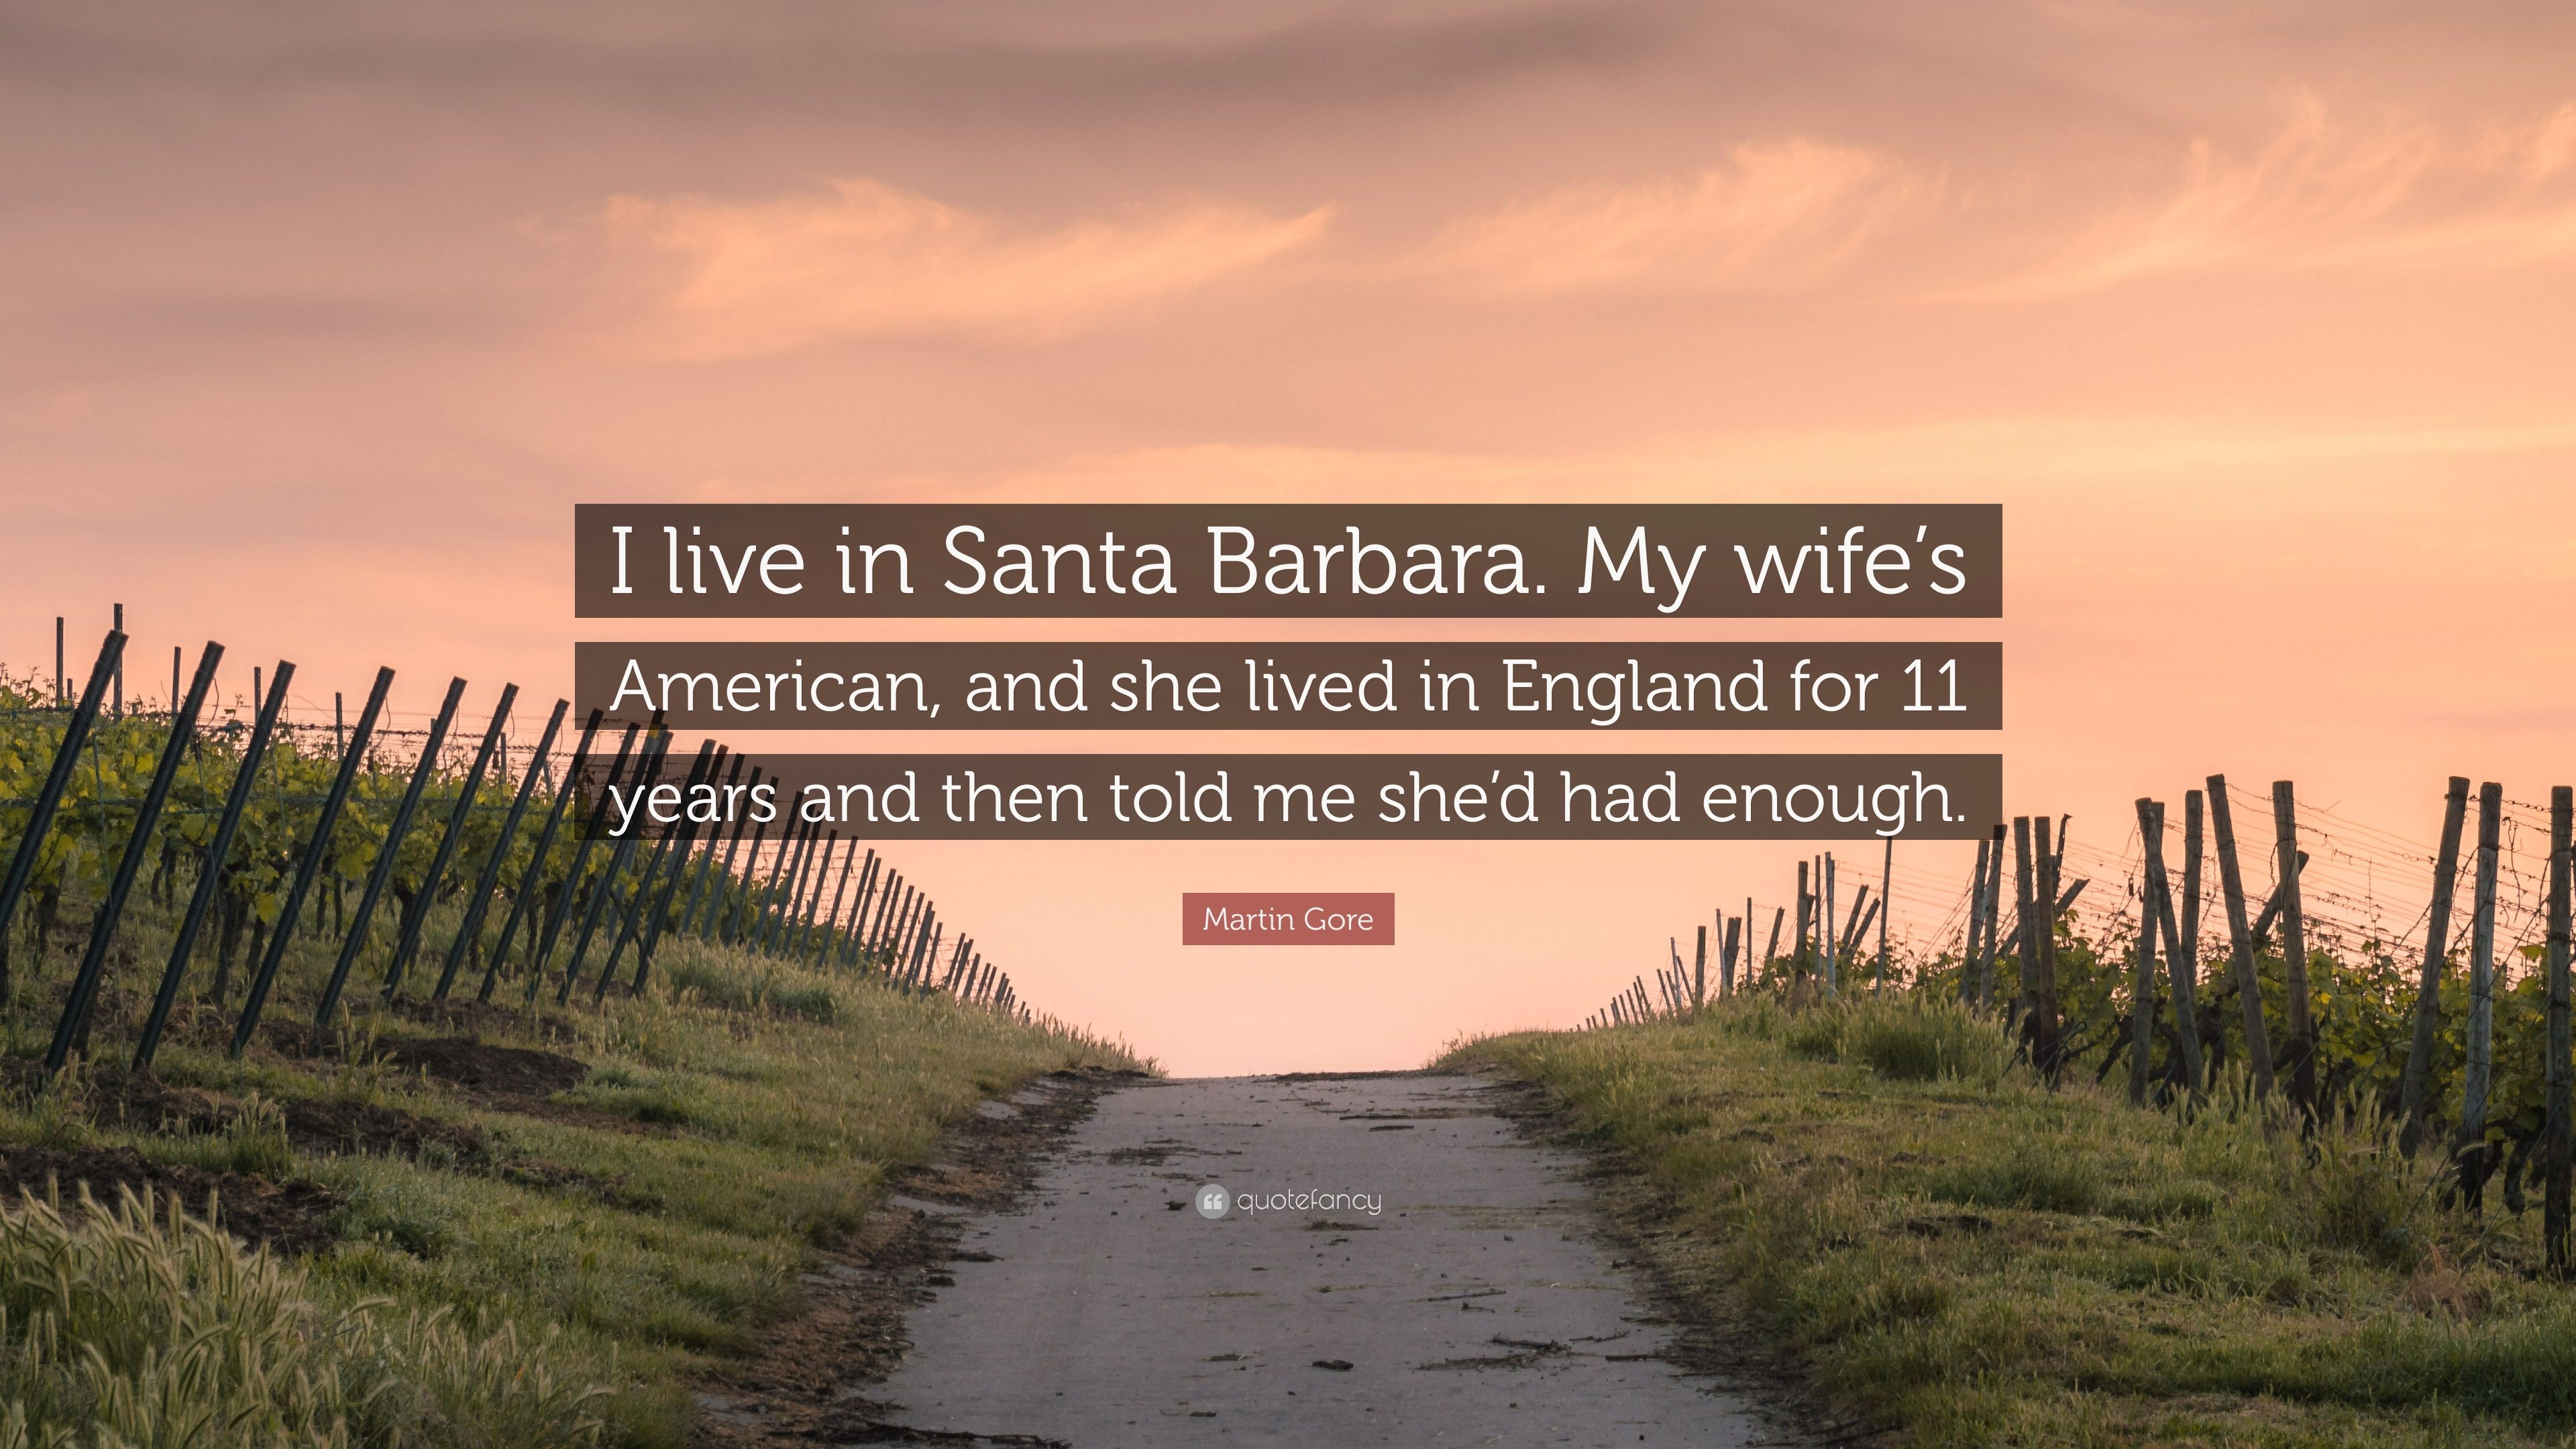 Martin Gore Quote: “I live in Santa Barbara. My wife's American